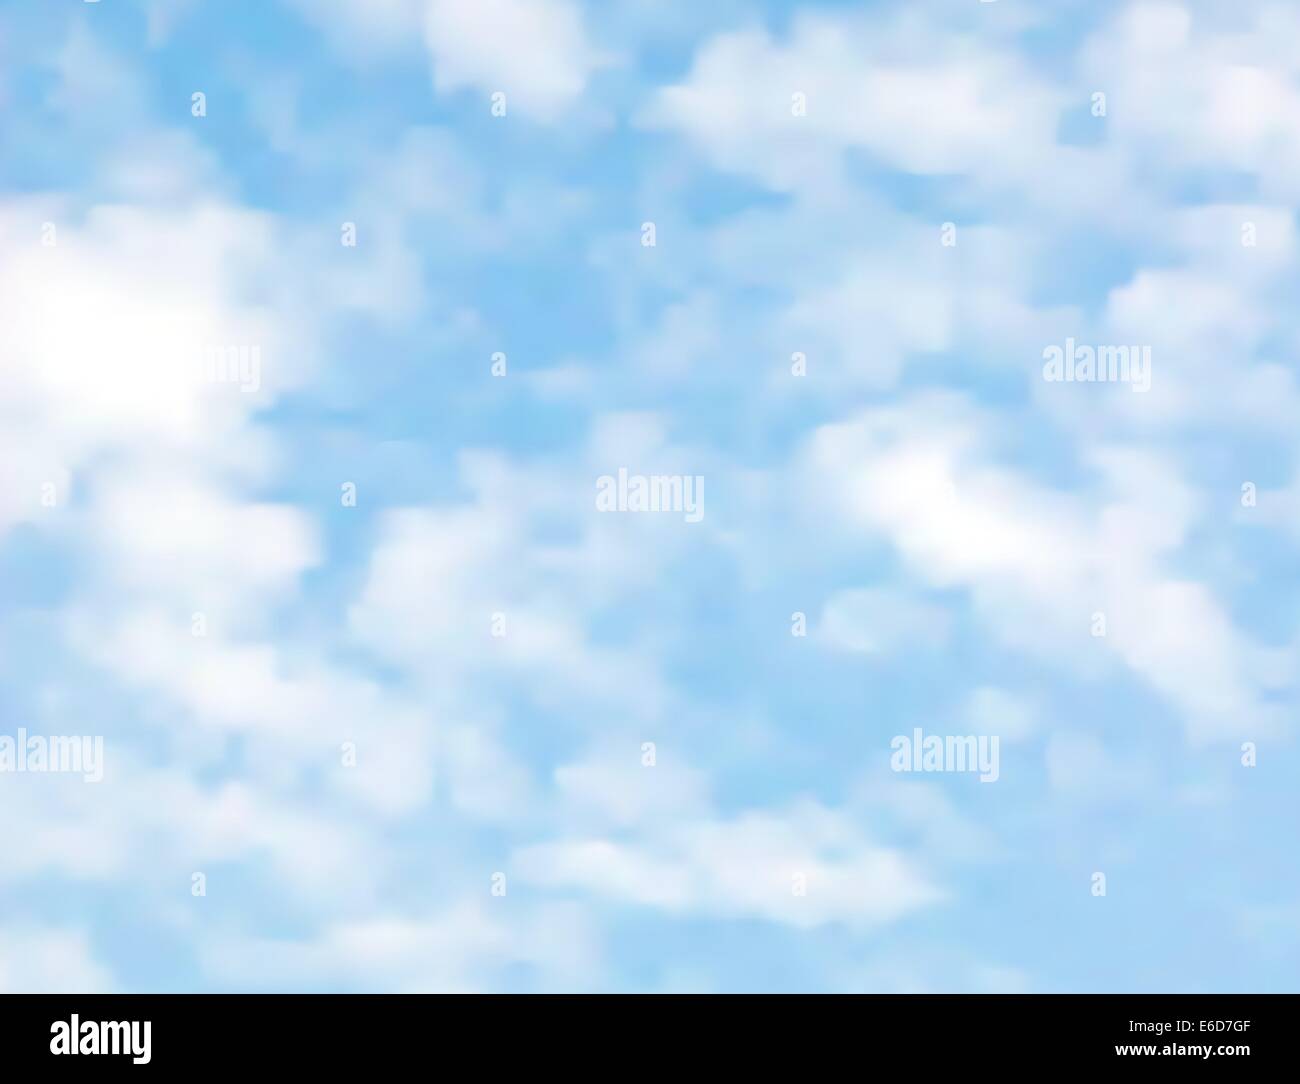 Realista ilustración vectorial editable de luz las nubes en un cielo azul hecha con una malla de degradado Ilustración del Vector